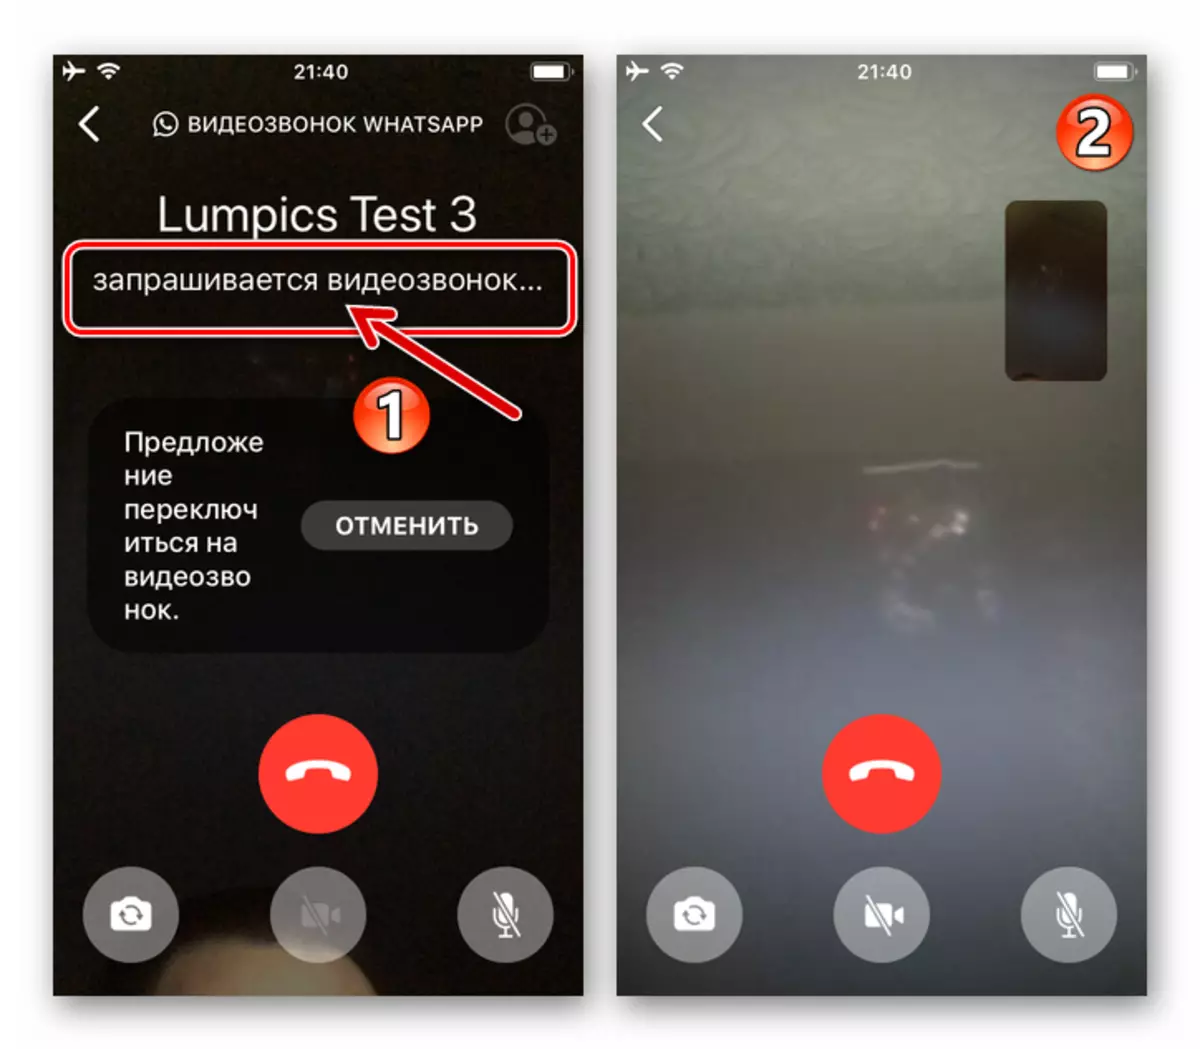 Whatsapp za zahtevo za iOS, da gredo na video klic v procesu glasovnega klica, ki se izvaja skozi Messenger